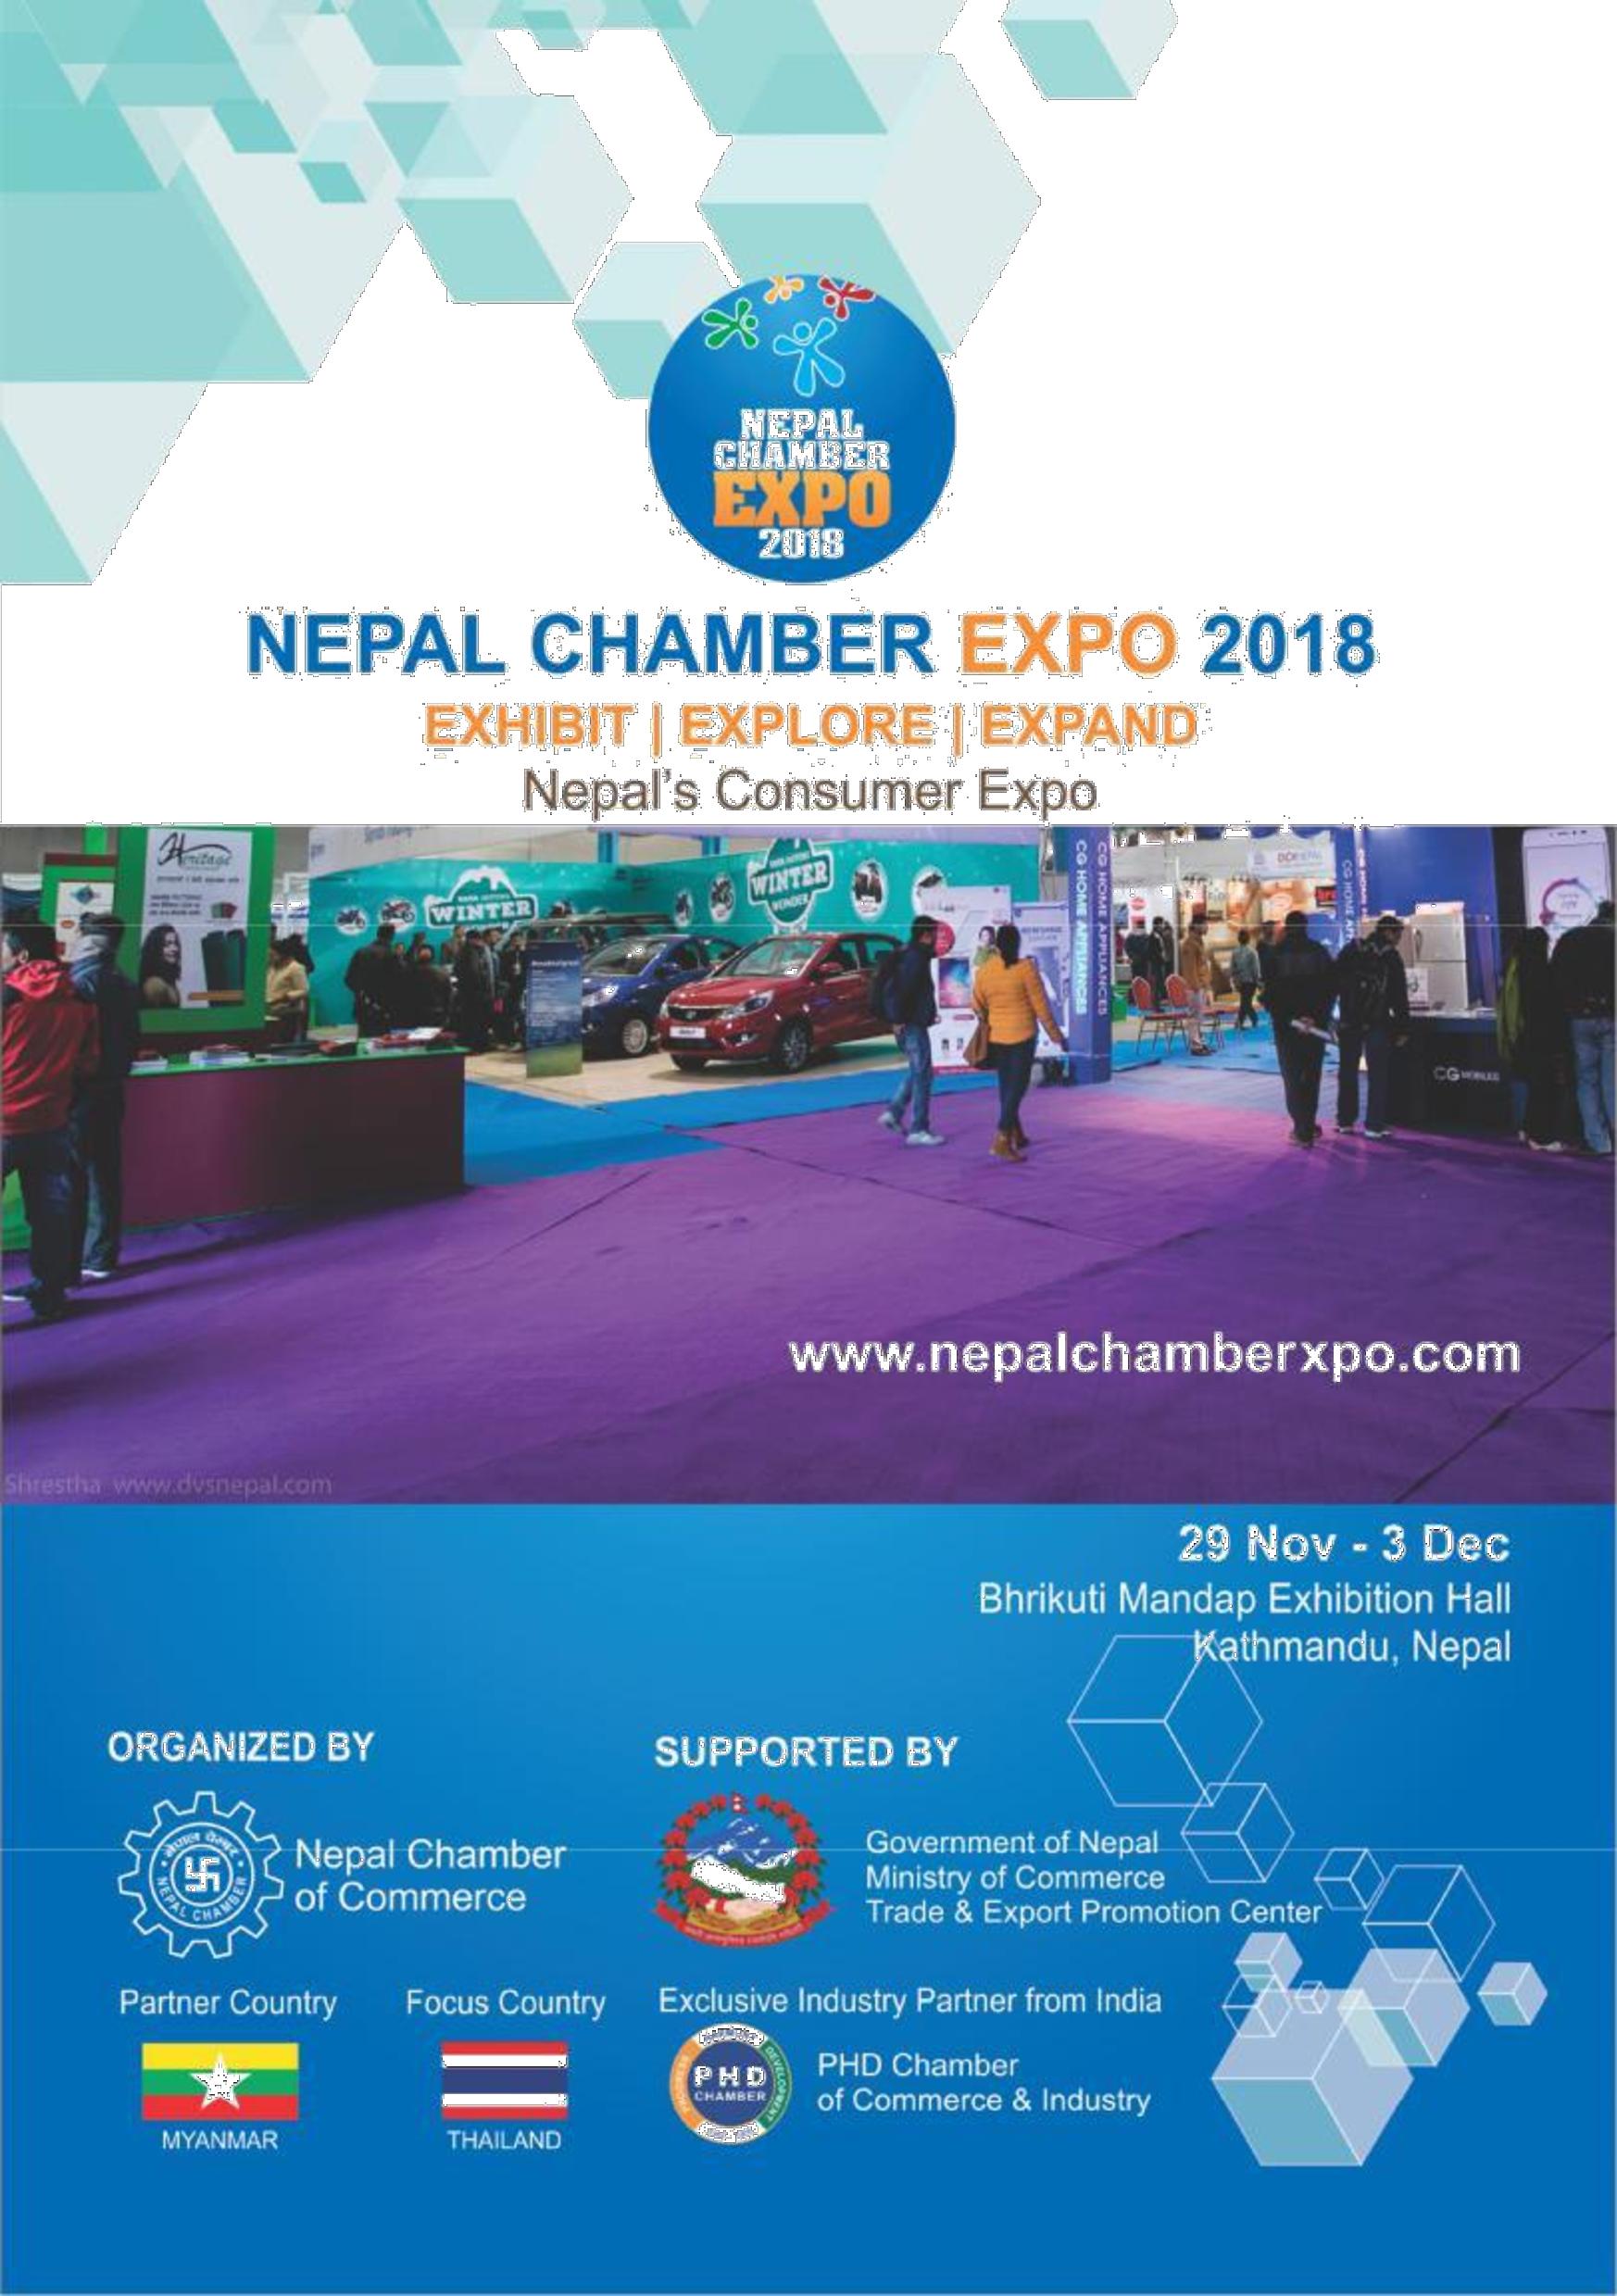 Nepal Chamber Expo 2018